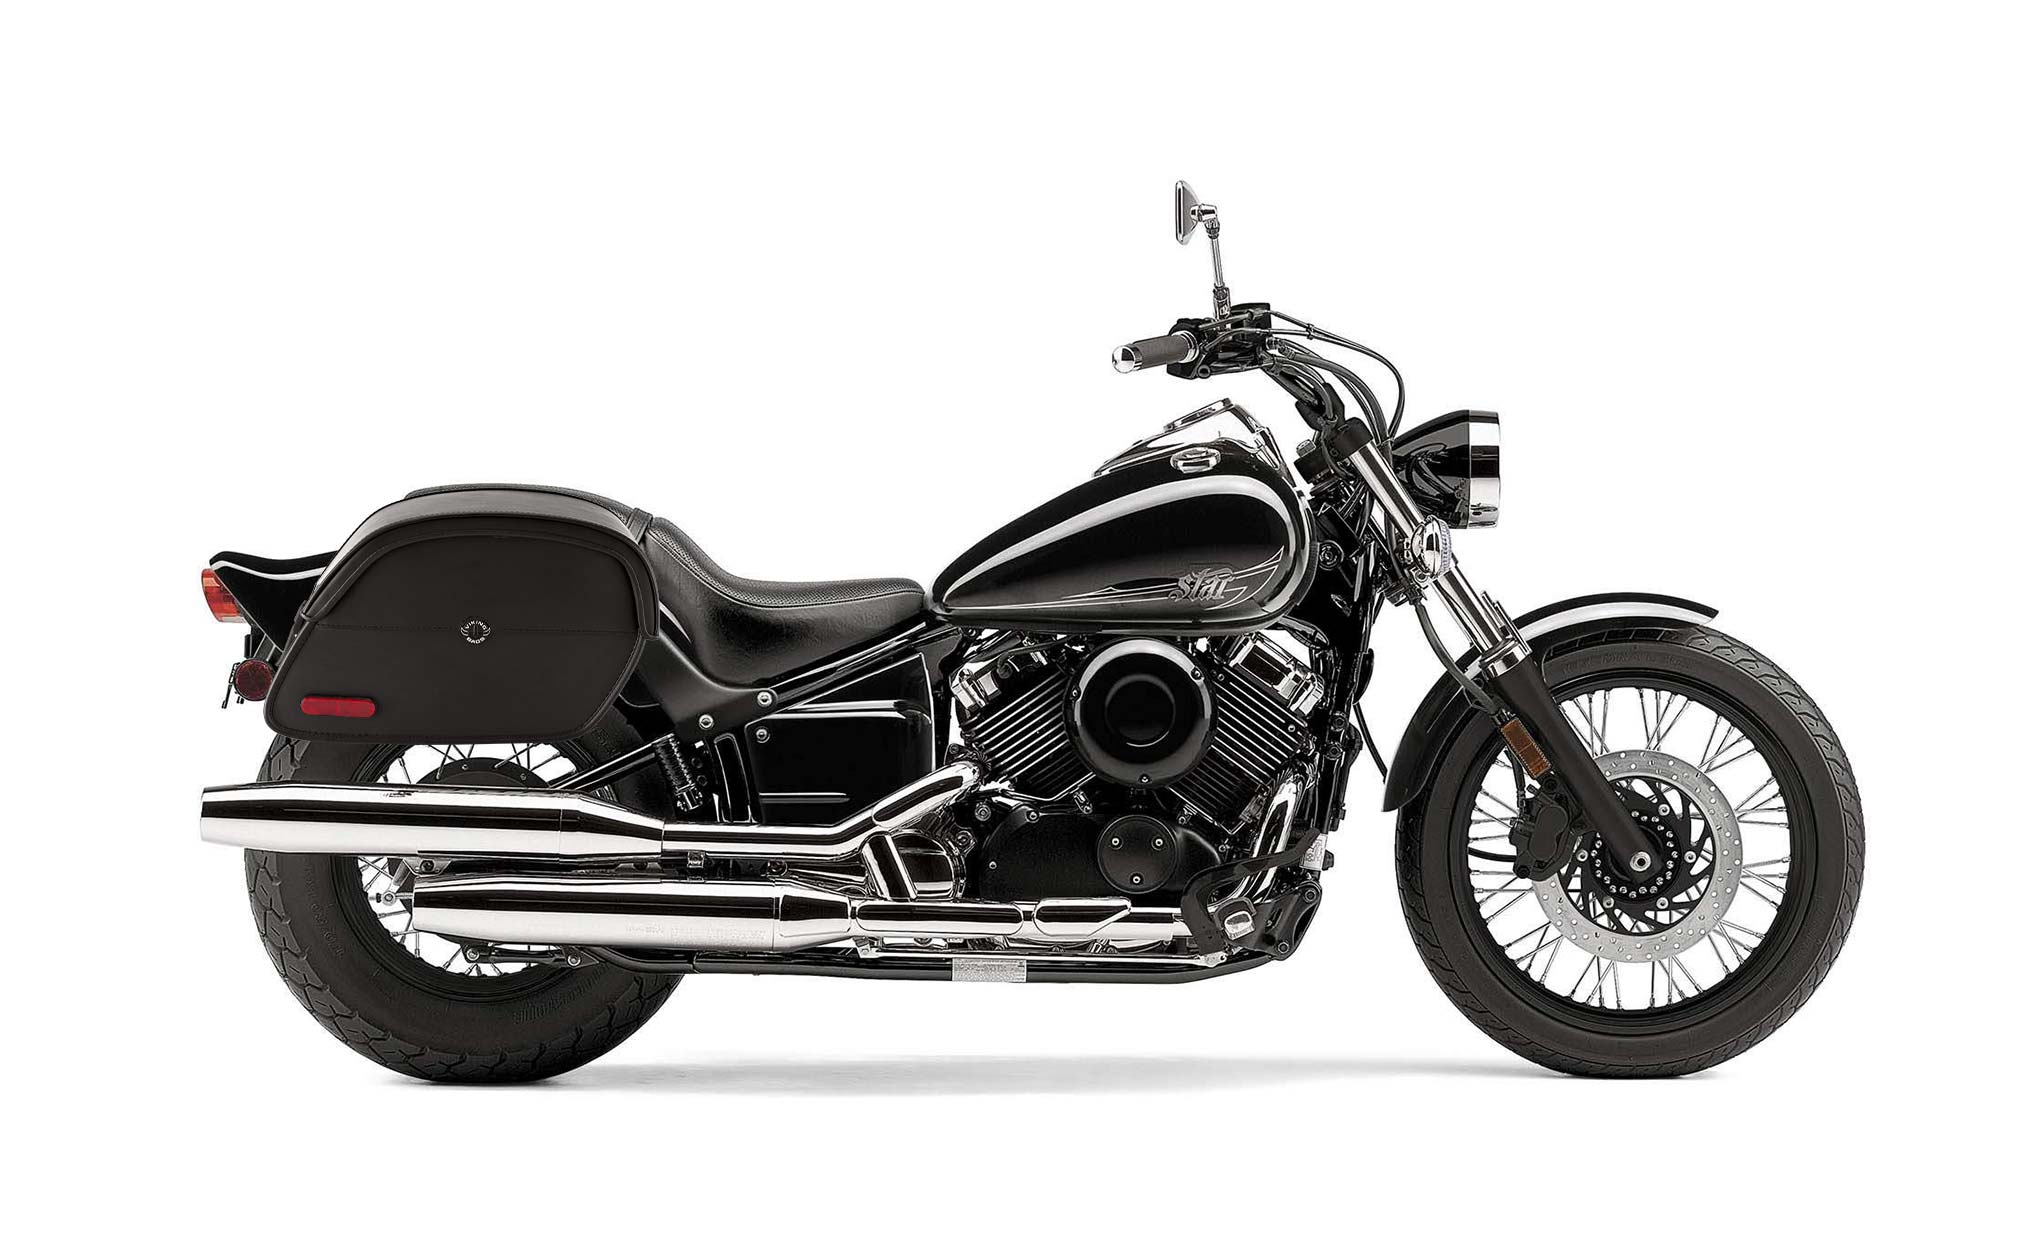 Viking California Large Yamaha V Star 650 Custom Xvs65T Leather Motorcycle Saddlebags on Bike Photo @expand